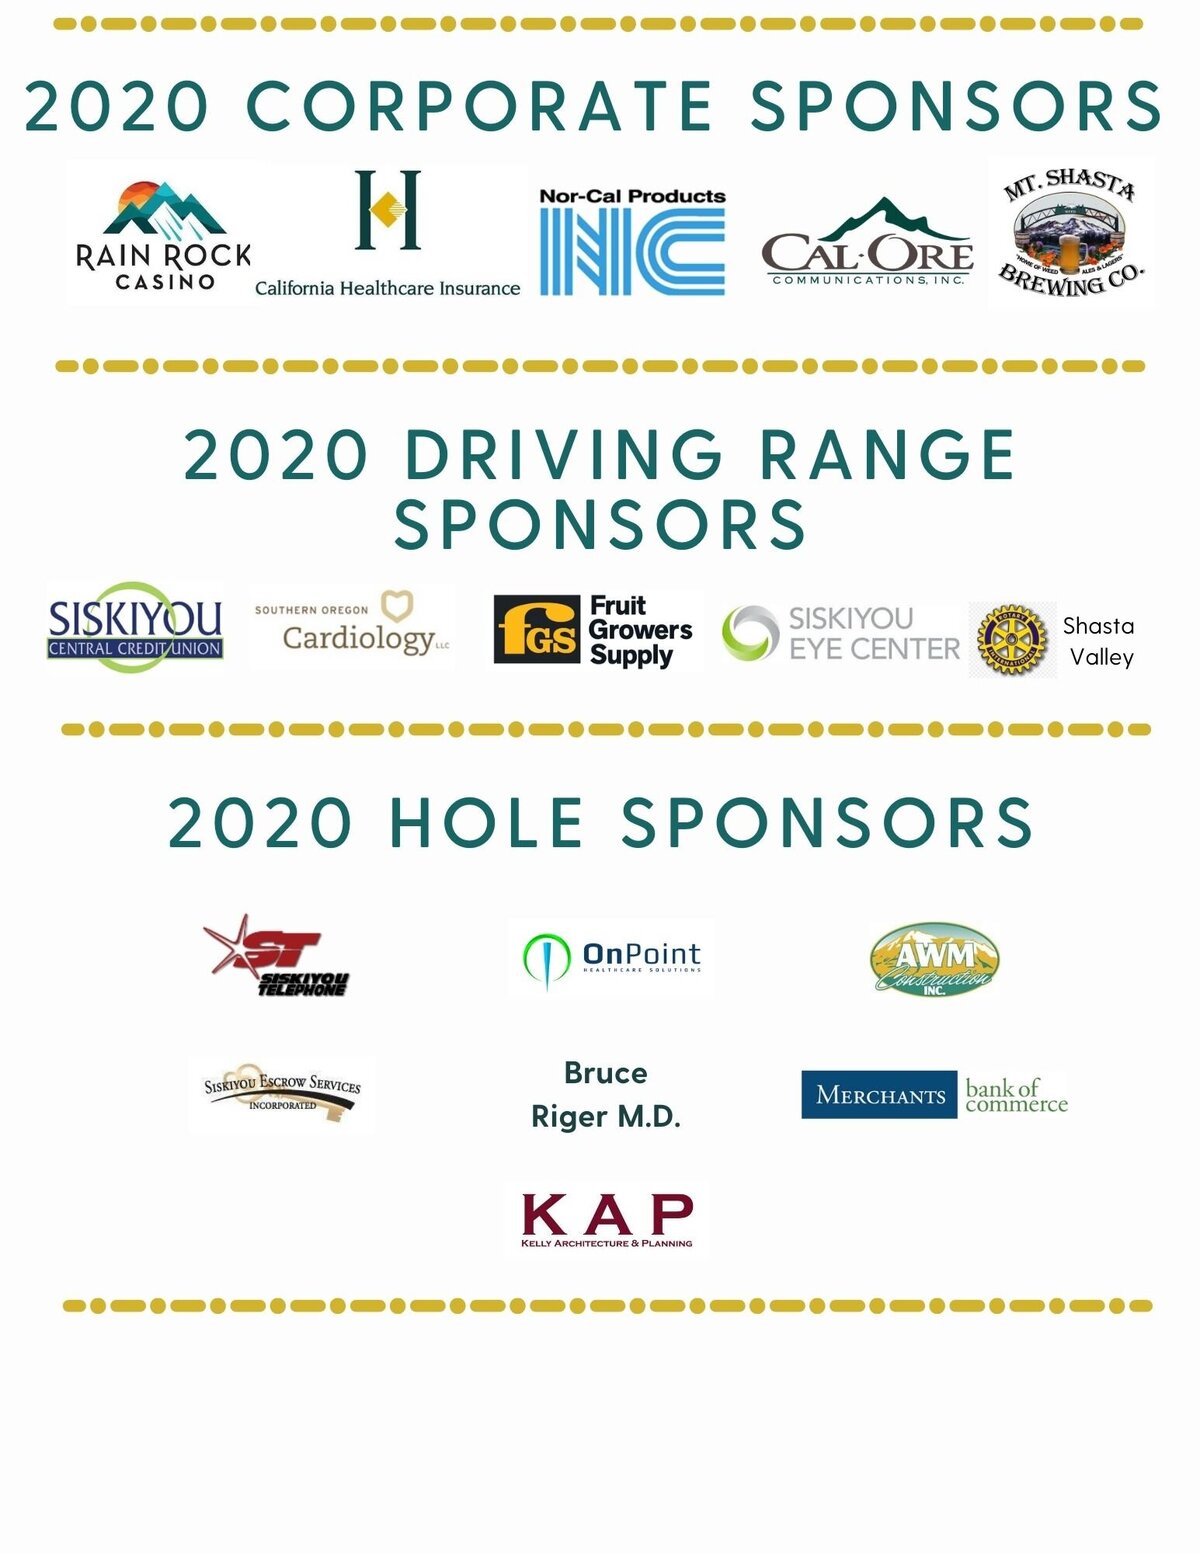 Additional 2020 Golf Tournament Sponsor Logos